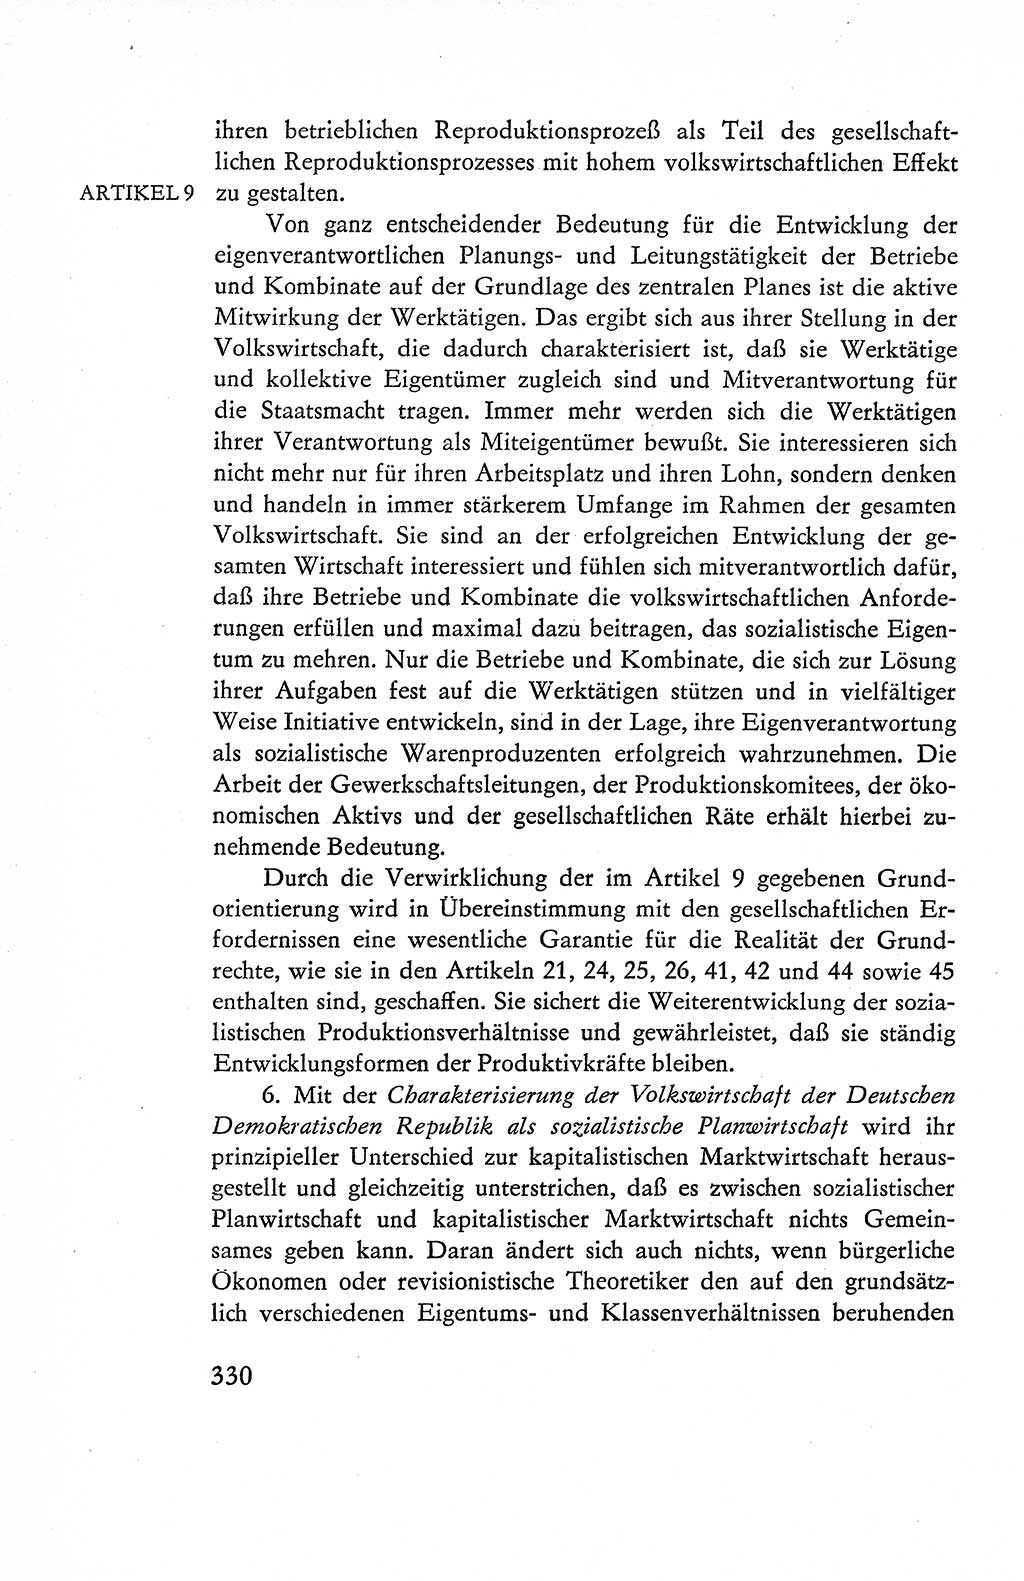 Verfassung der Deutschen Demokratischen Republik (DDR), Dokumente, Kommentar 1969, Band 1, Seite 330 (Verf. DDR Dok. Komm. 1969, Bd. 1, S. 330)